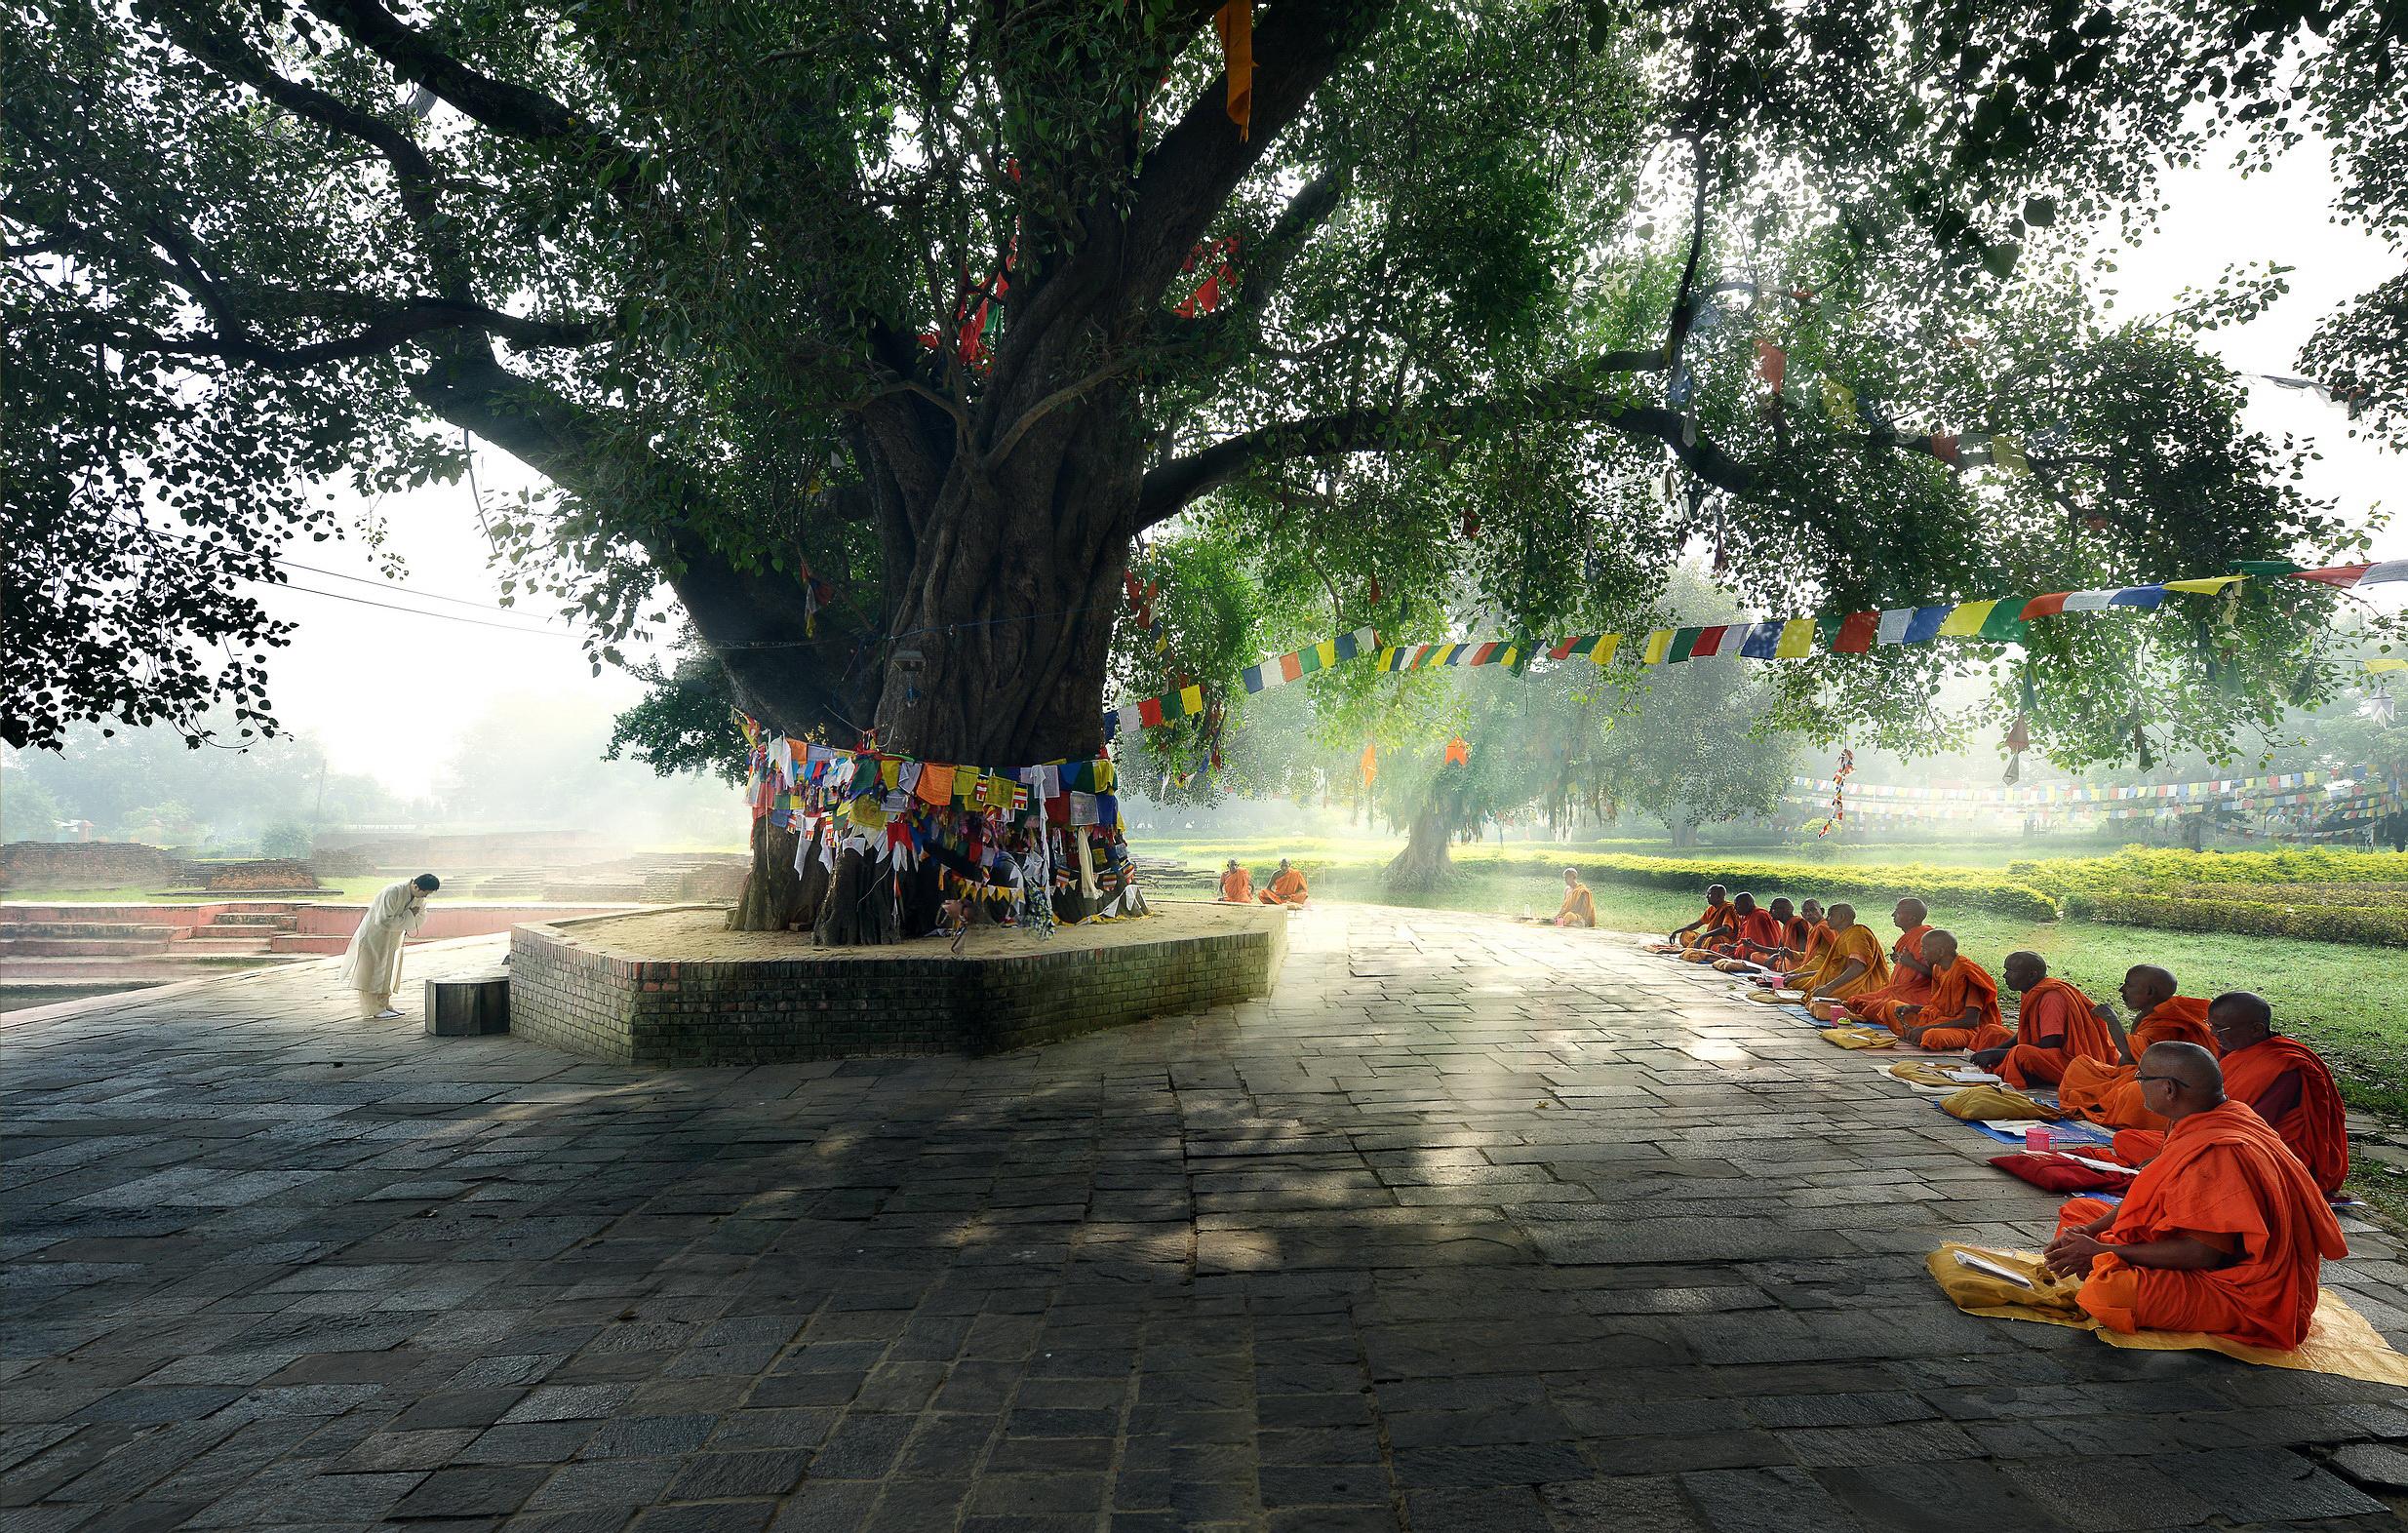 太子沐浴圣池,大菩提树,阿育王石柱处于尼泊尔西南和印度交界处的蓝